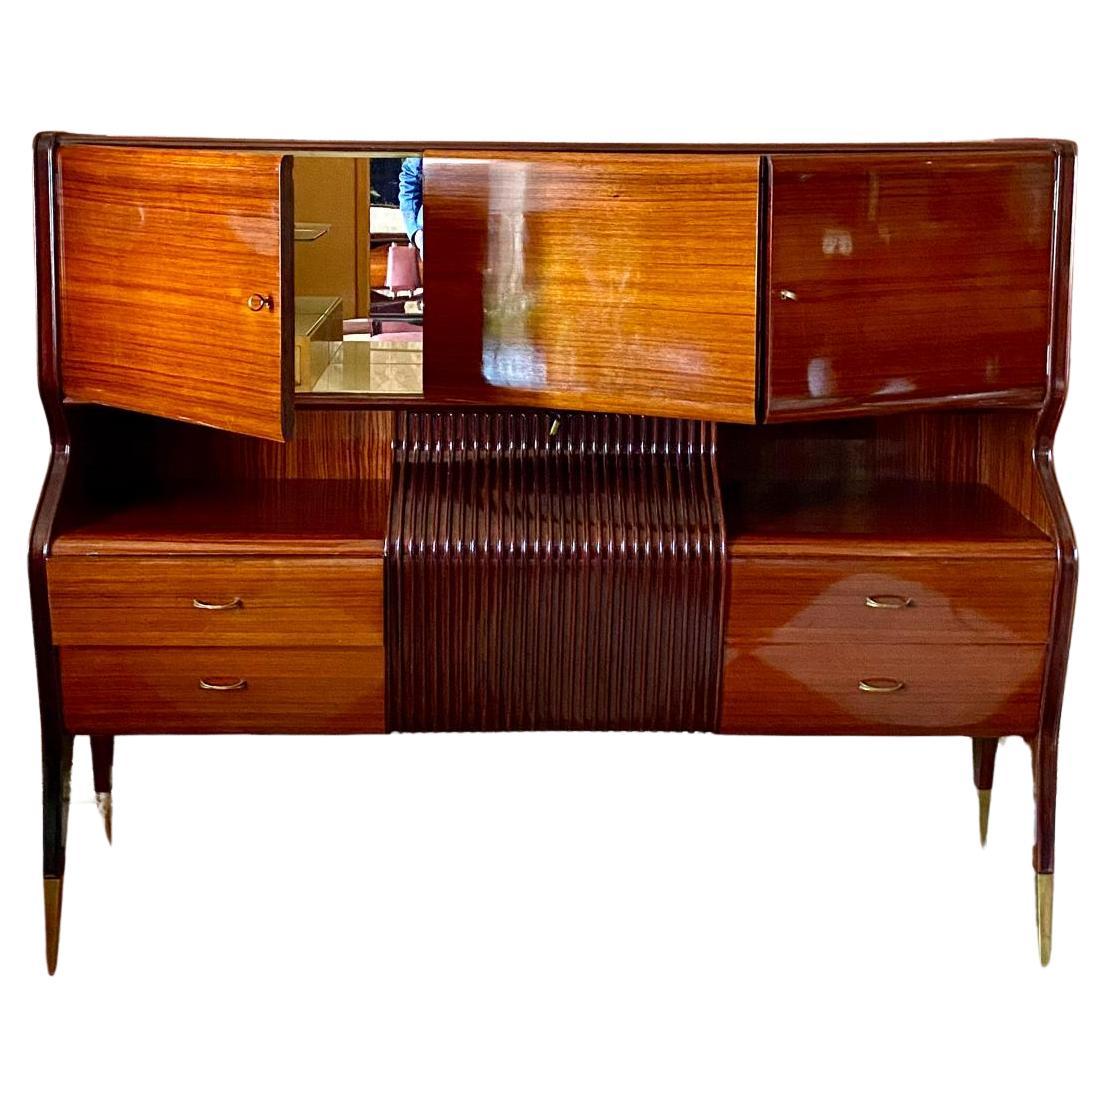 Buffet vintage italien moderne du milieu du siècle avec meuble bar, conçu par Osvaldo Borsani pour l'Atelier Borsani Varedo dans les années 1950.

Fait partie d'un ensemble complet de salon (grand buffet avec miroir XL, tables de salle à manger et